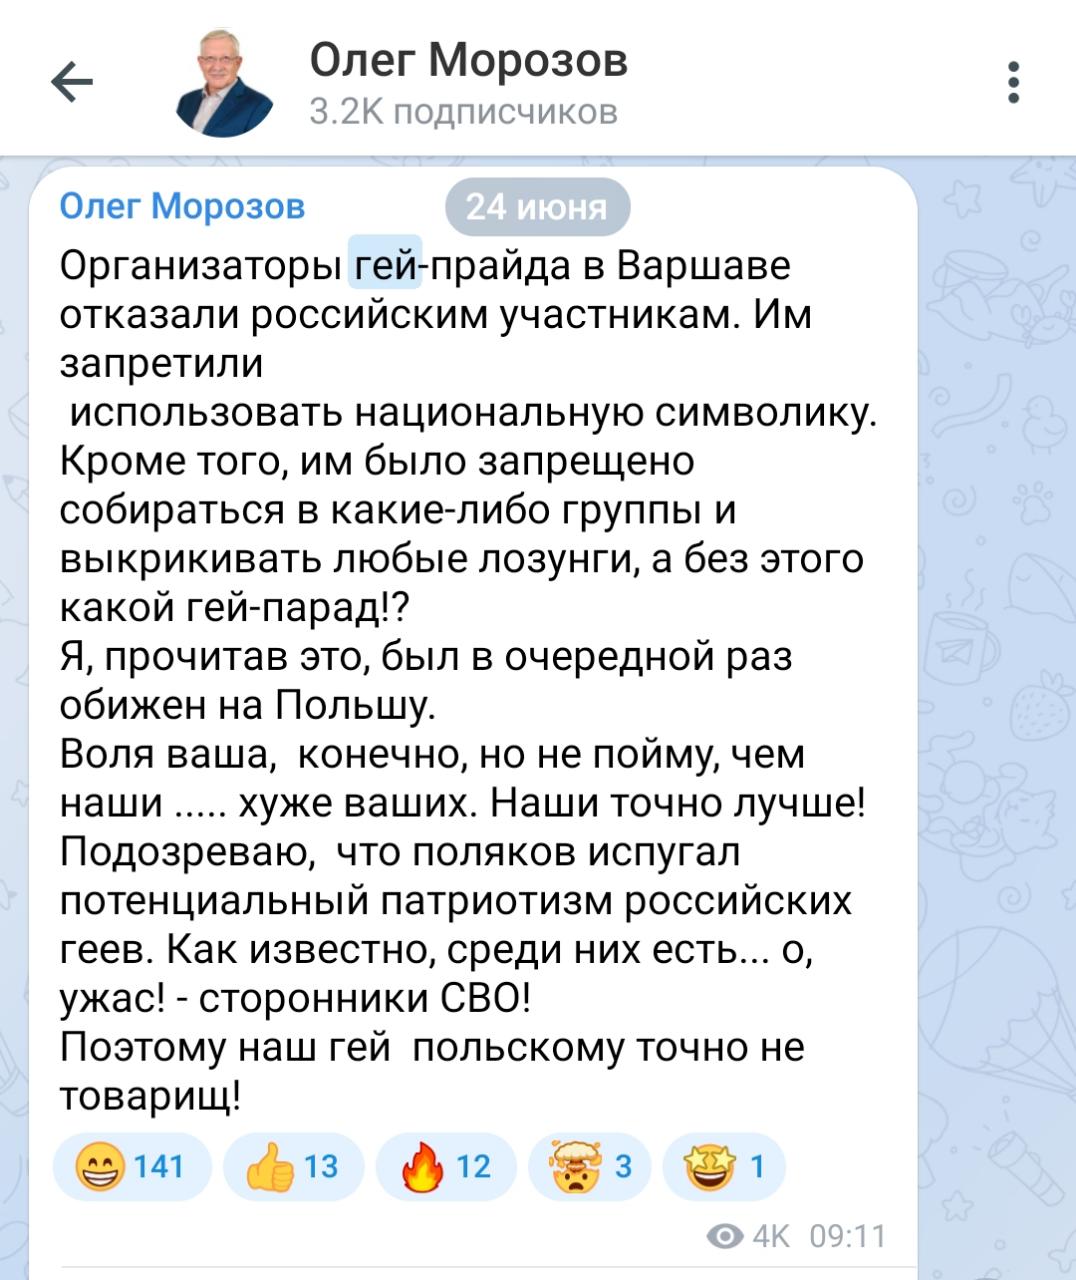 Депутат-единоросс Морозов, поддержавший геев, не хочет СССР